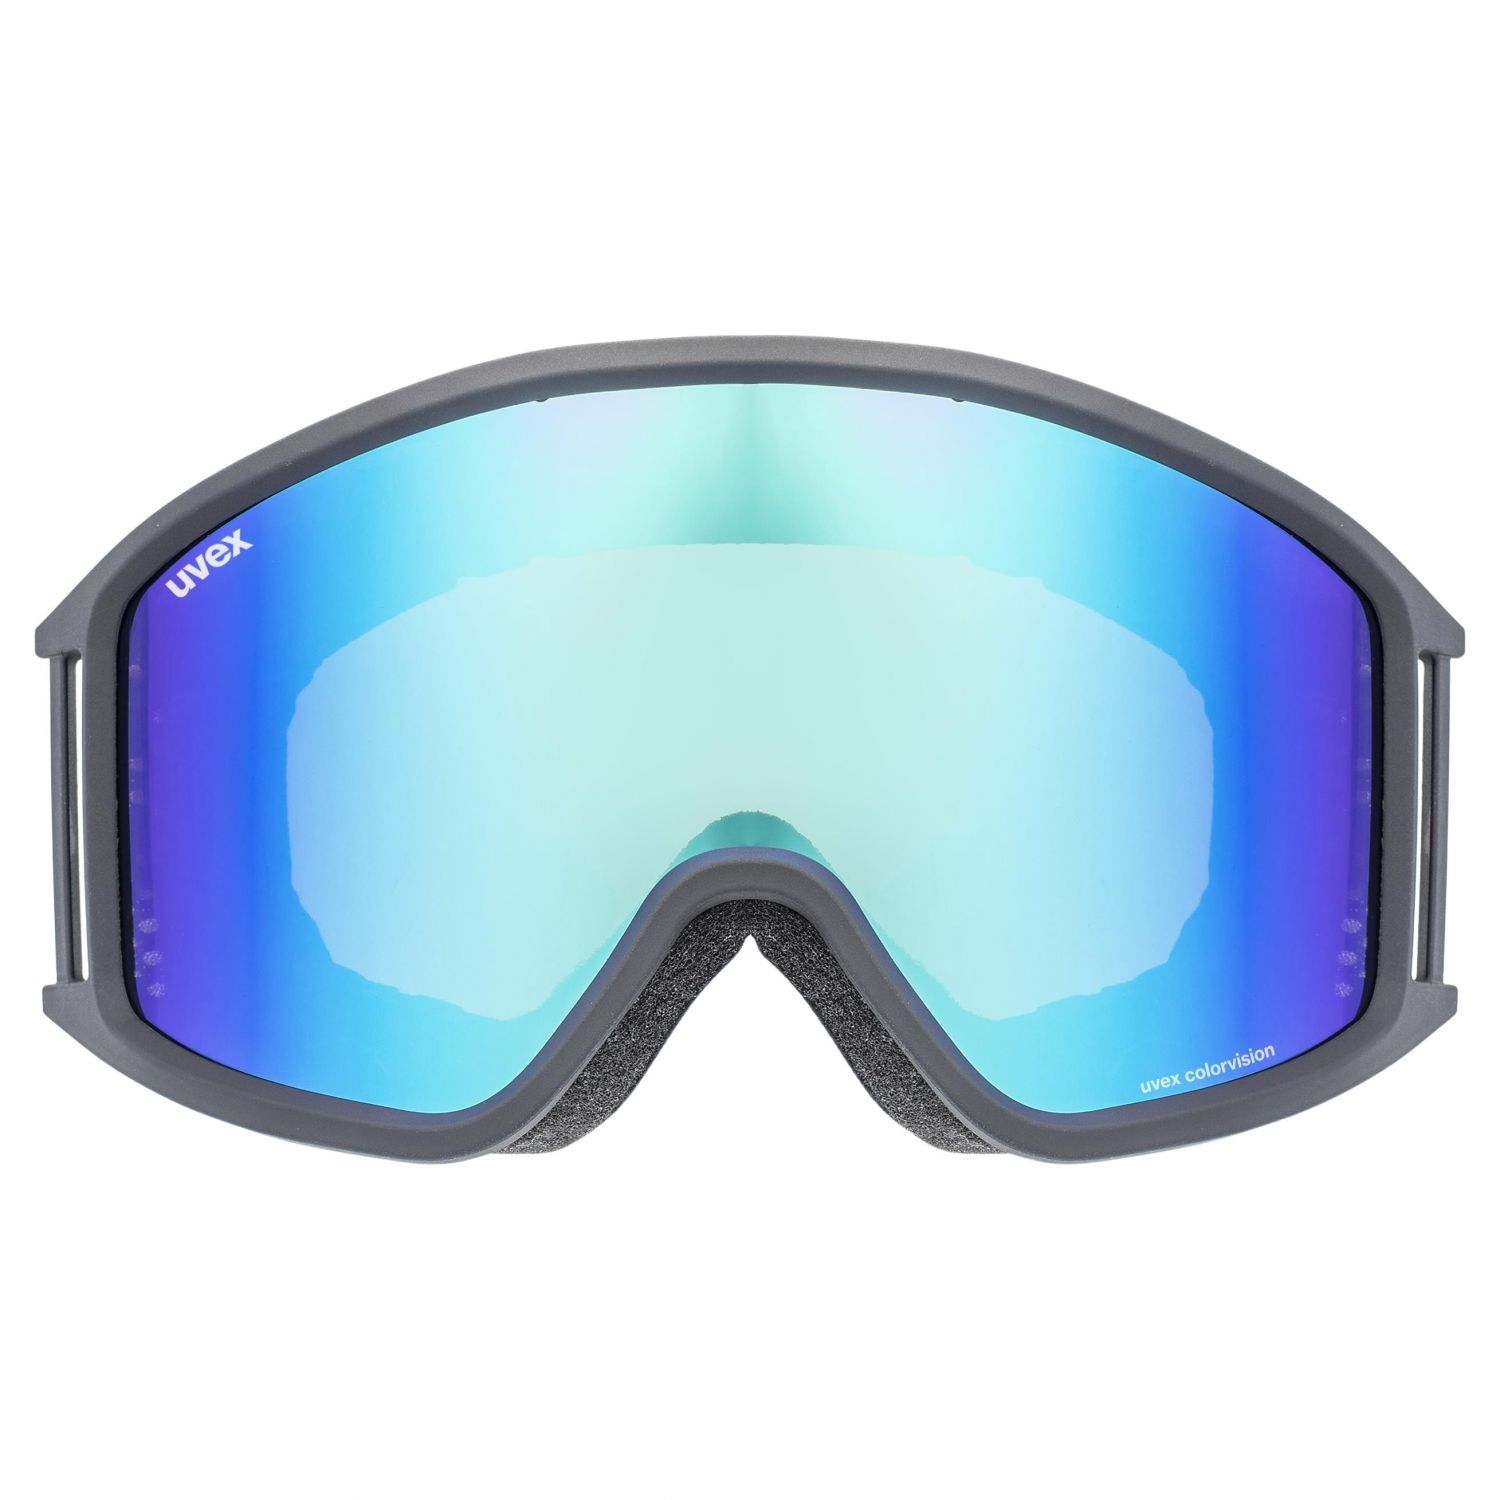 Uvex g.gl. 3000 CV, ski bril, zwart